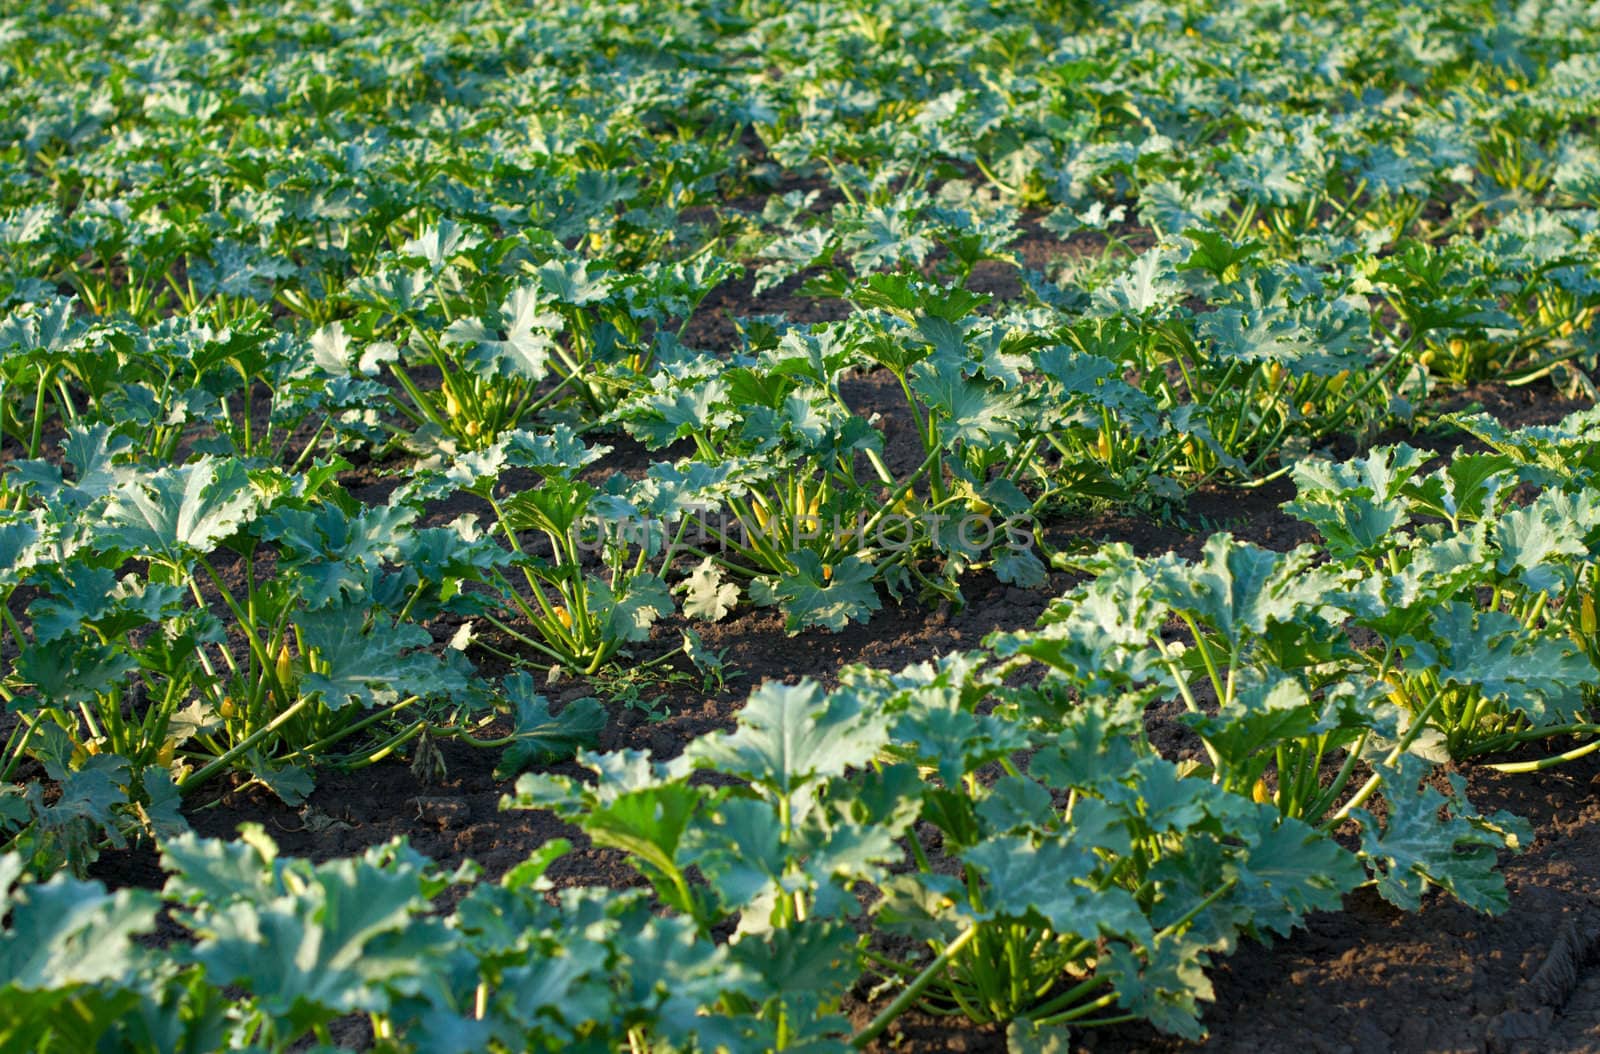 Zucchini bushes in a field